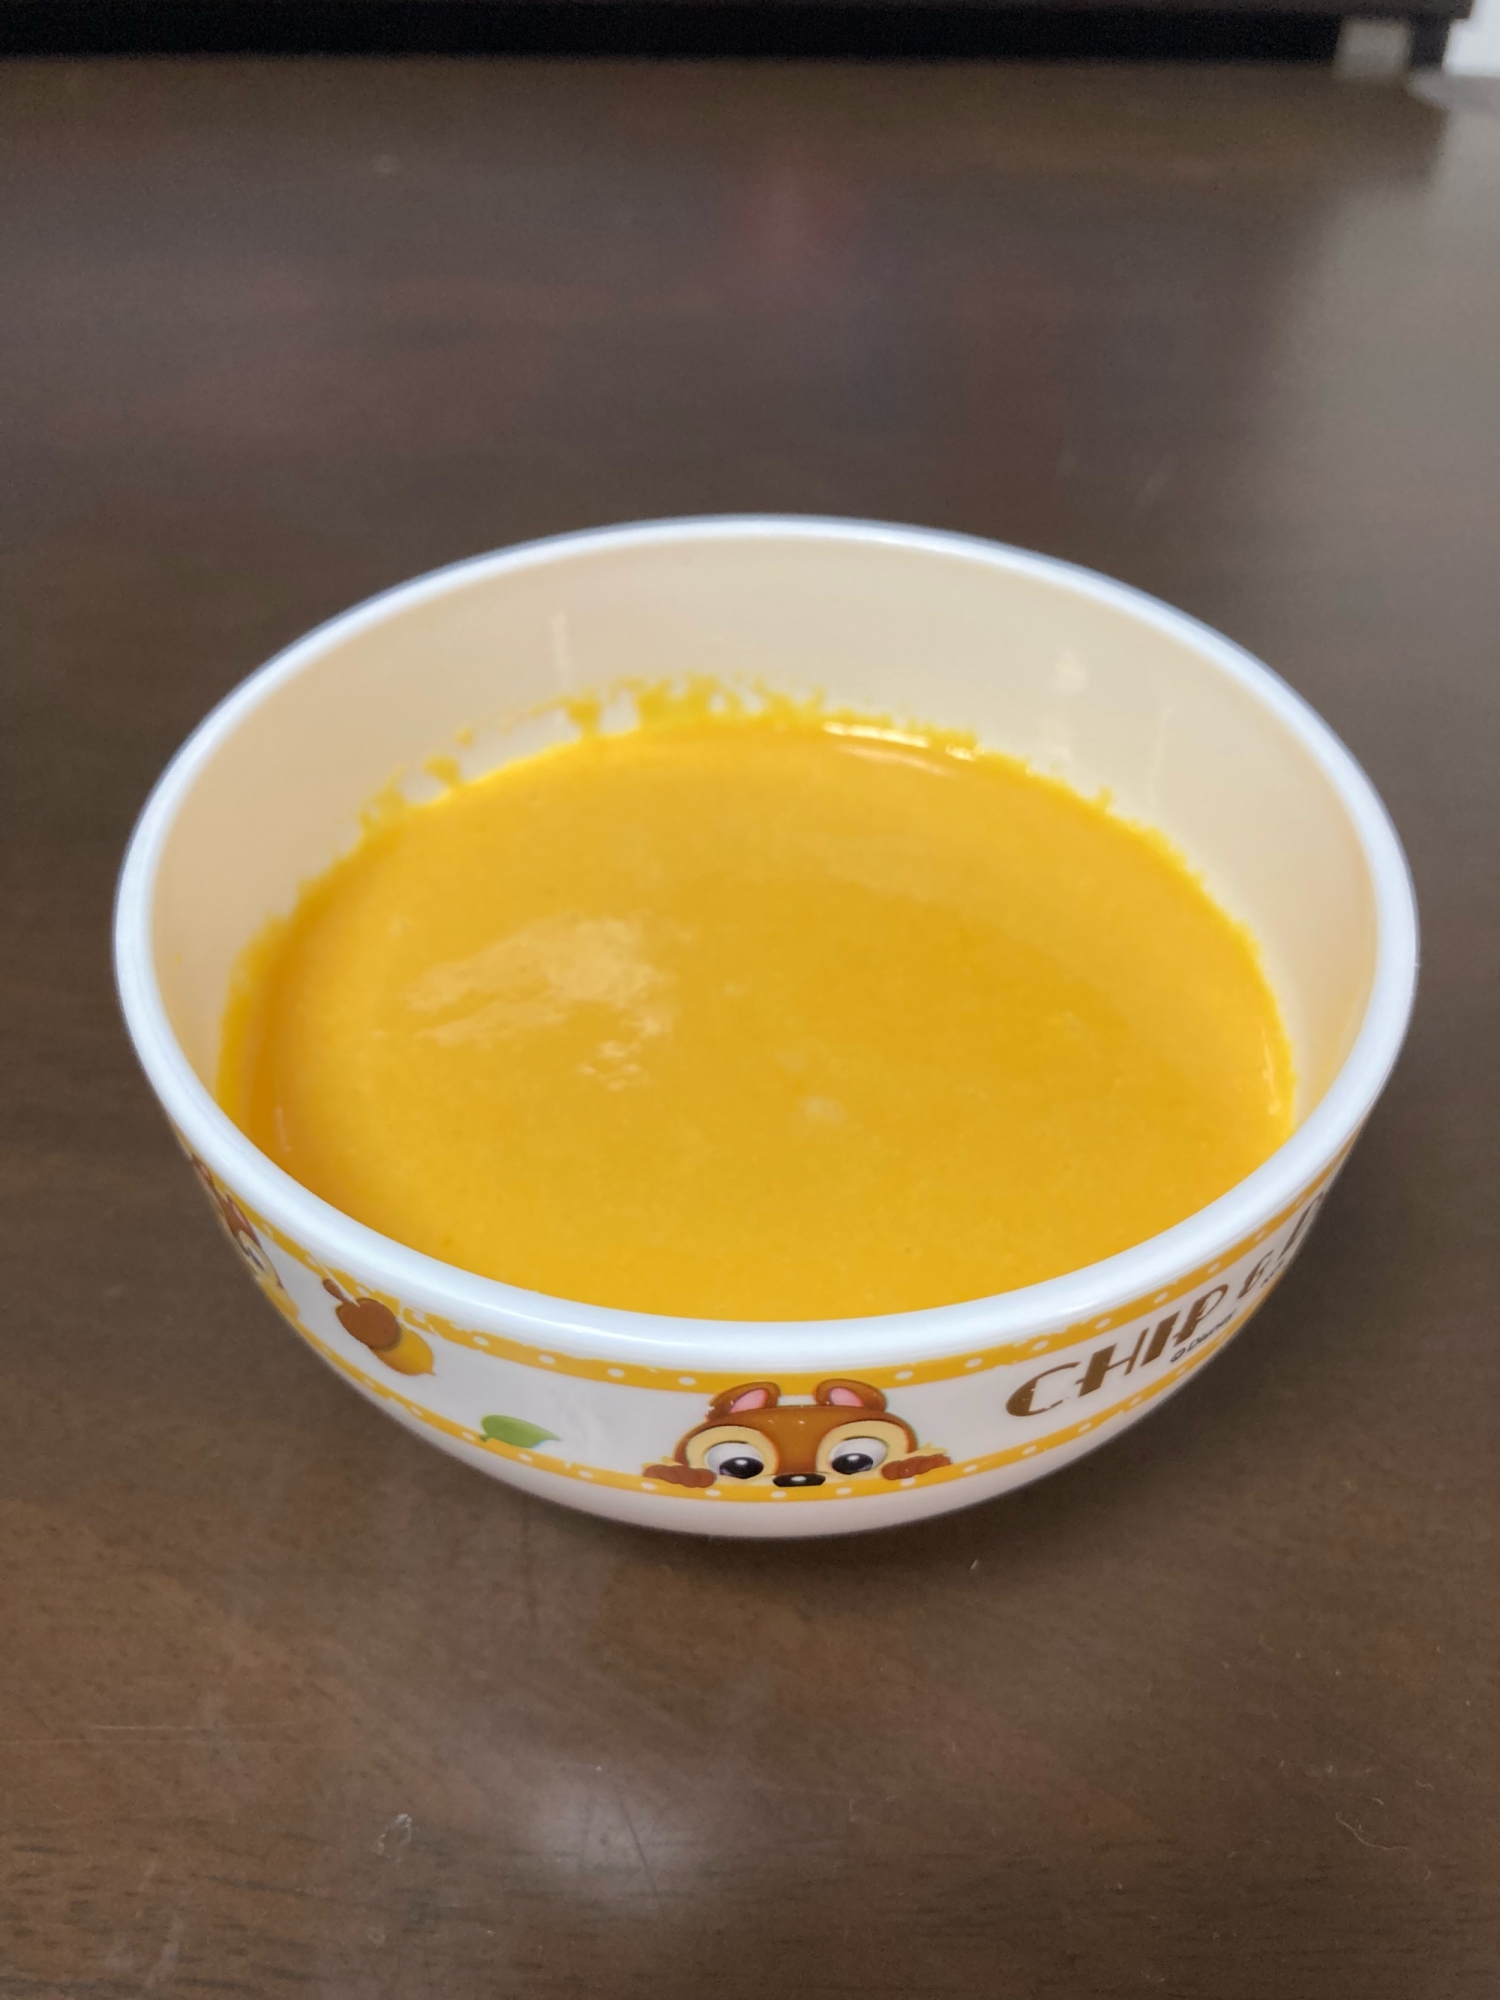 人参と玉ねぎのスープ